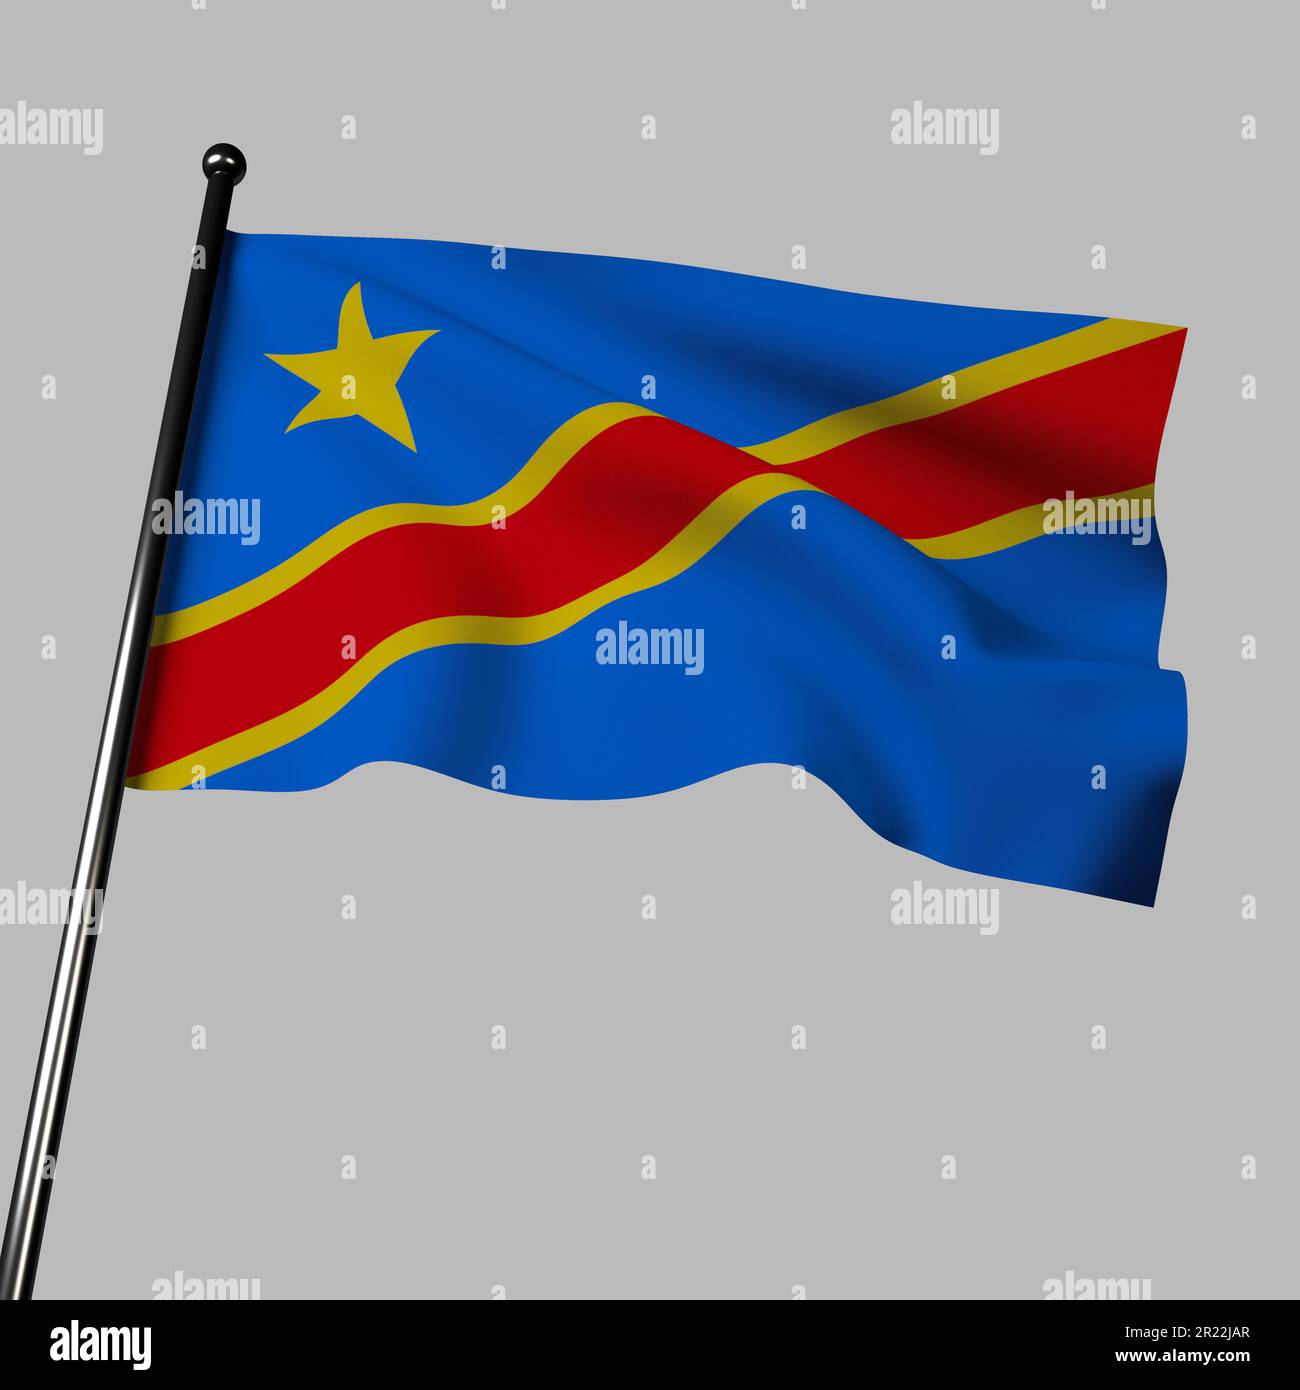 La bandiera 3D della Repubblica Democratica del Congo che appare in grigio presenta una striscia diagonale gialla, rossa e blu con una stella gialla. I colori simboleggiano la pace, Blo Foto Stock